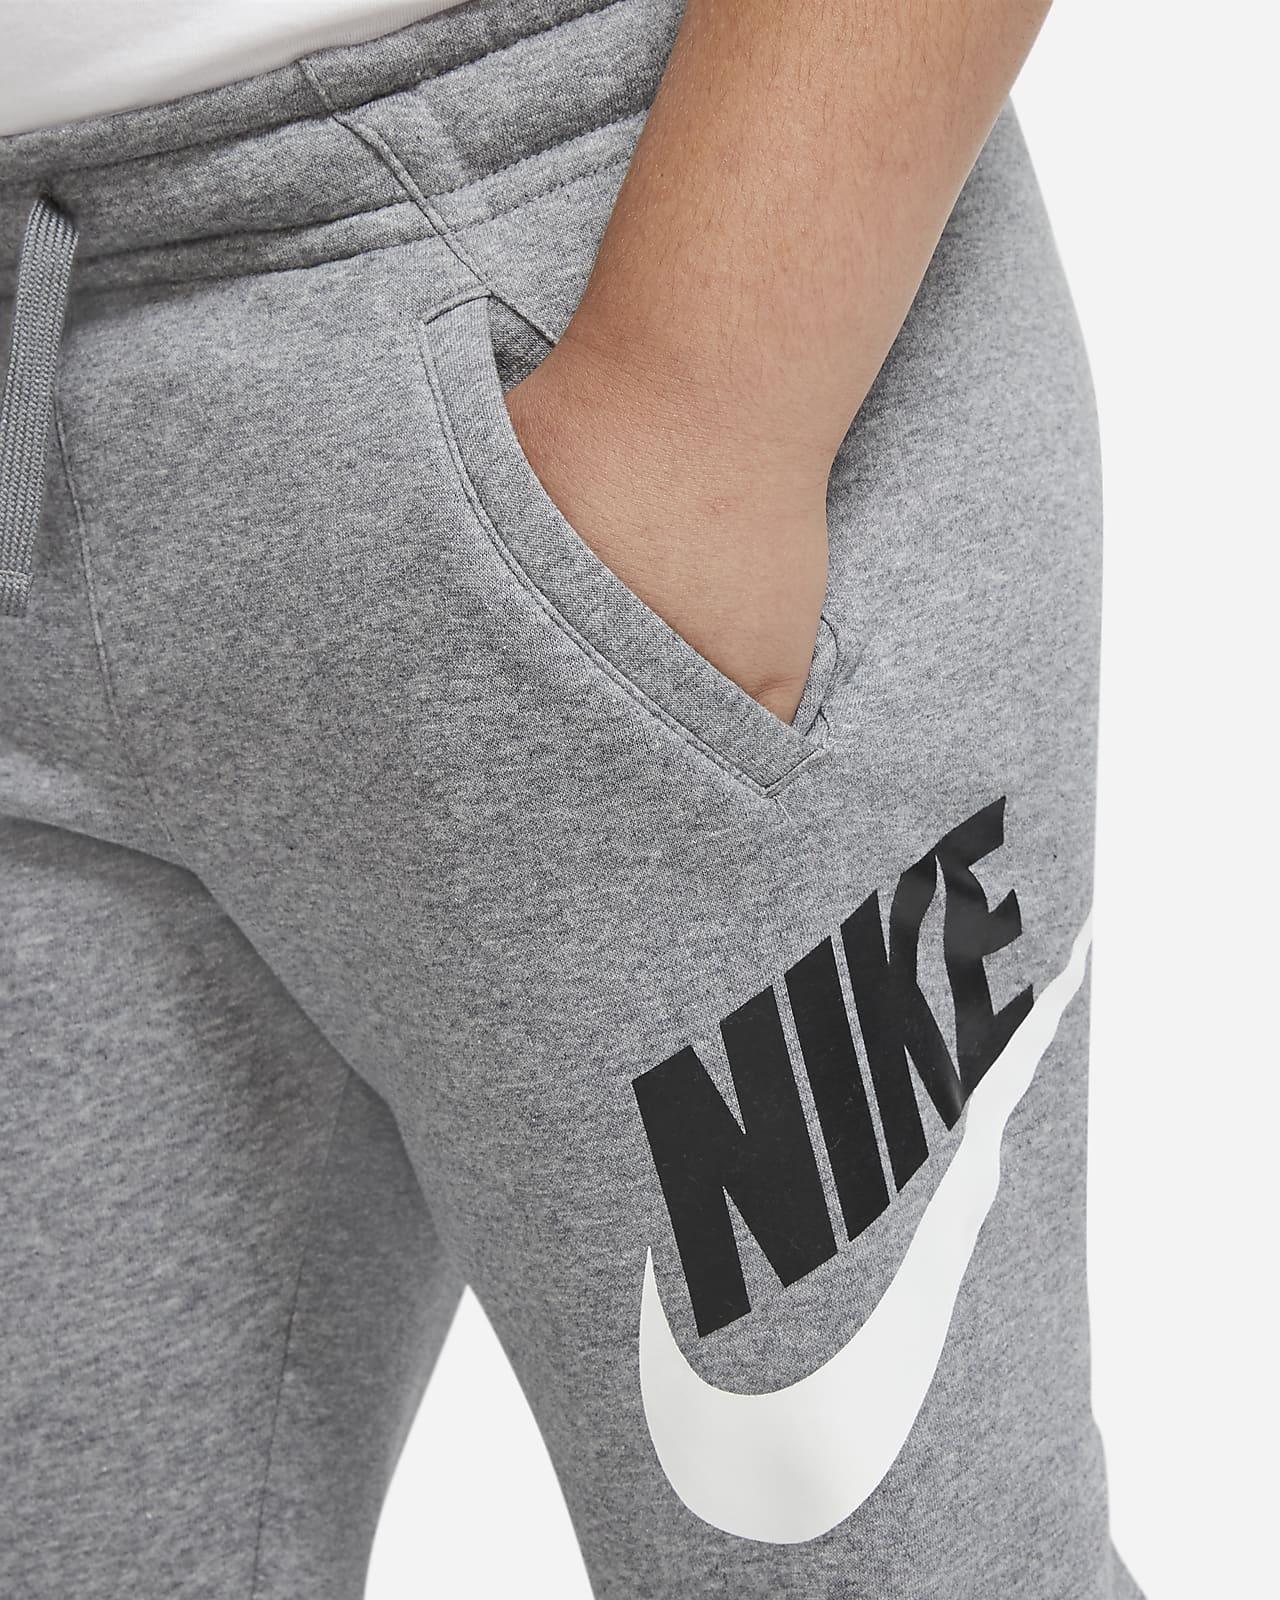 Nike Sportswear Club Fleece Big Kids' (Boys') Pants (Extended Size ...